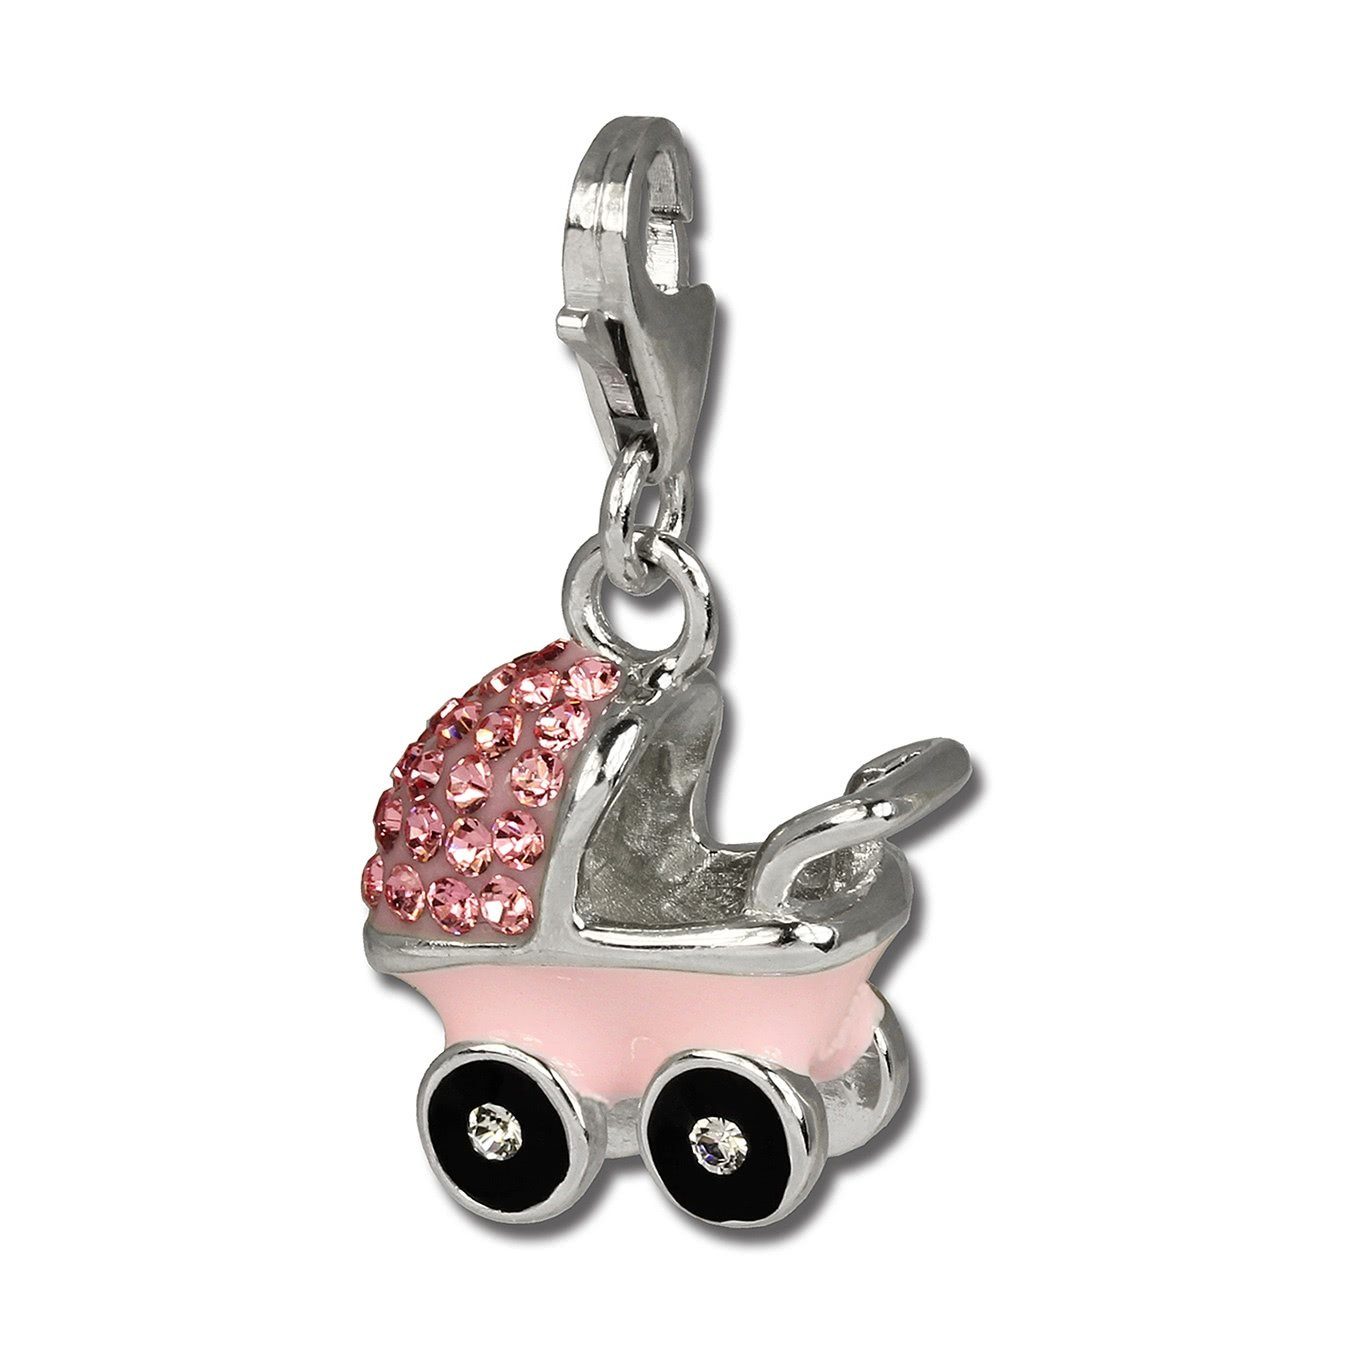 SilberDream Charm-Einhänger SilberDream rosa Charm Kinderwagen (Charmsanhänger), Charmsanhänger Kinderwagen, 925 Sterling Silber, Farbe: rosa, weiß